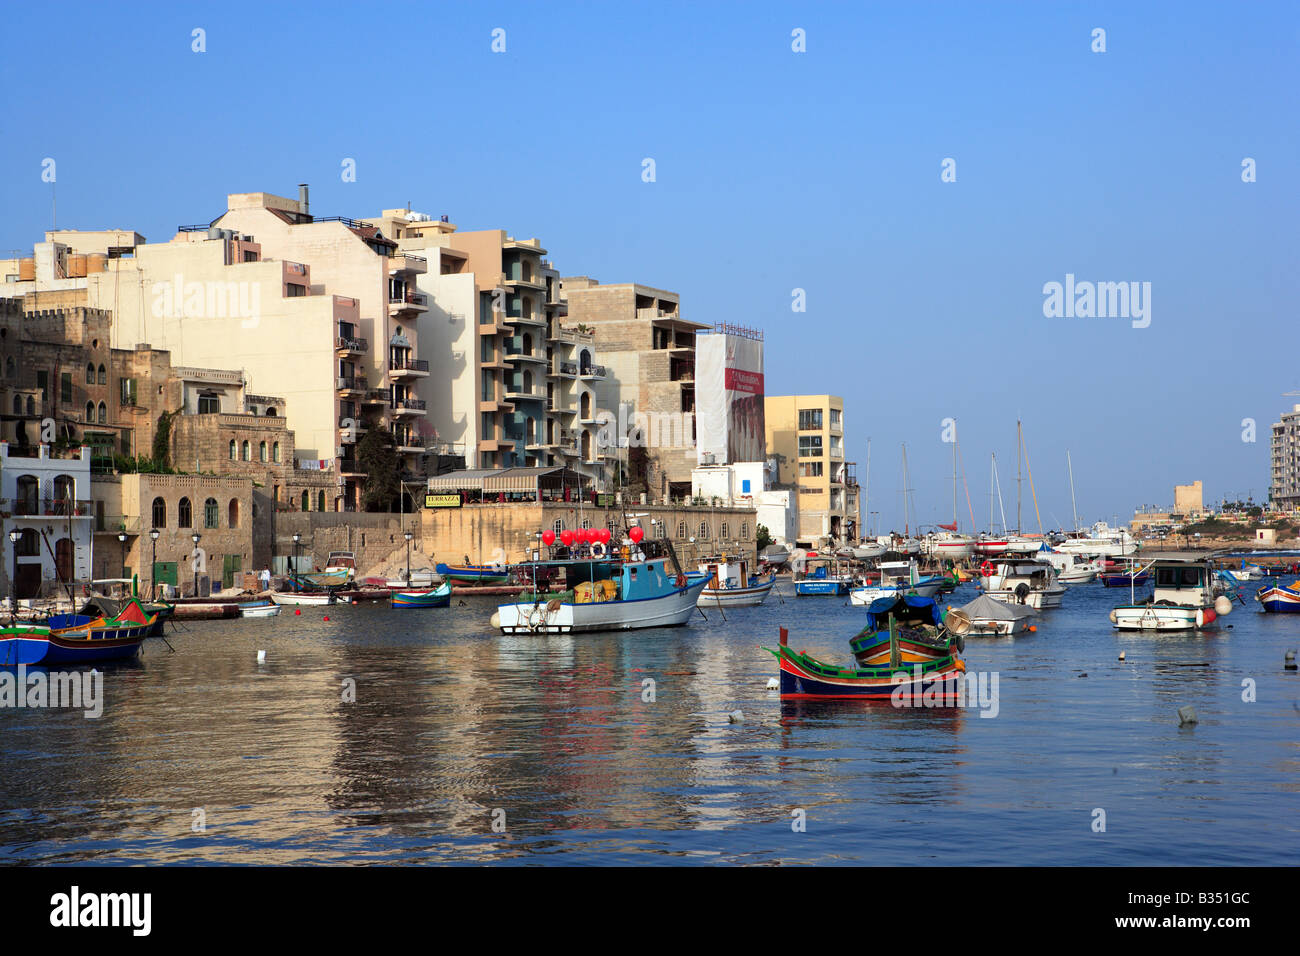 St Julian's waterfront, Malta Stock Photo